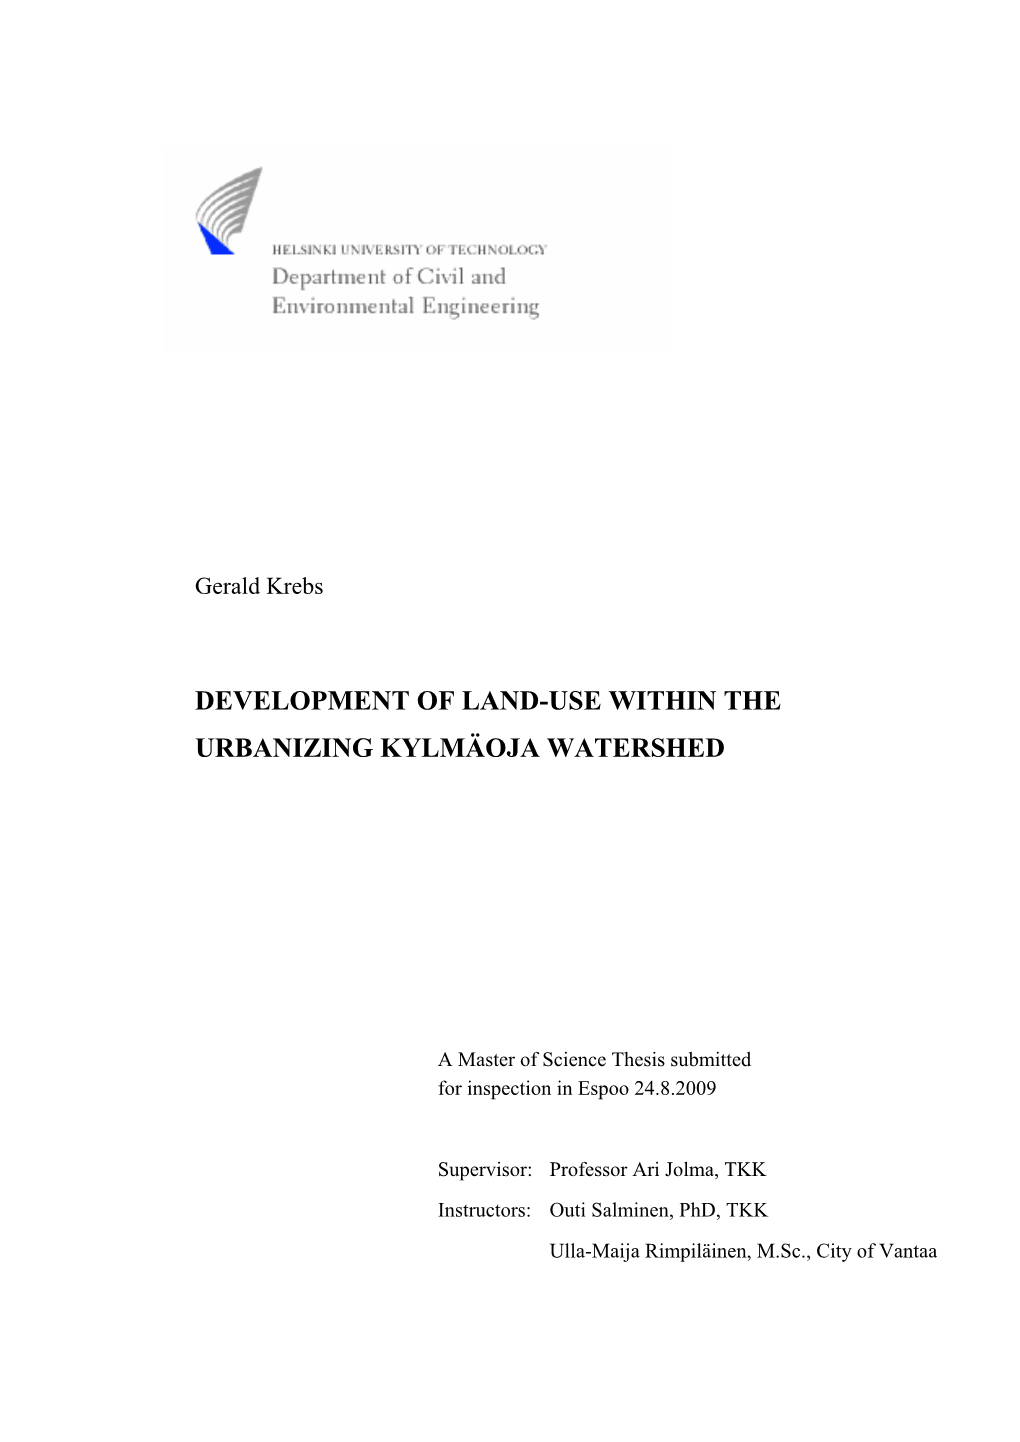 Development of Land-Use Within the Urbanizing Kylmäoja Watershed